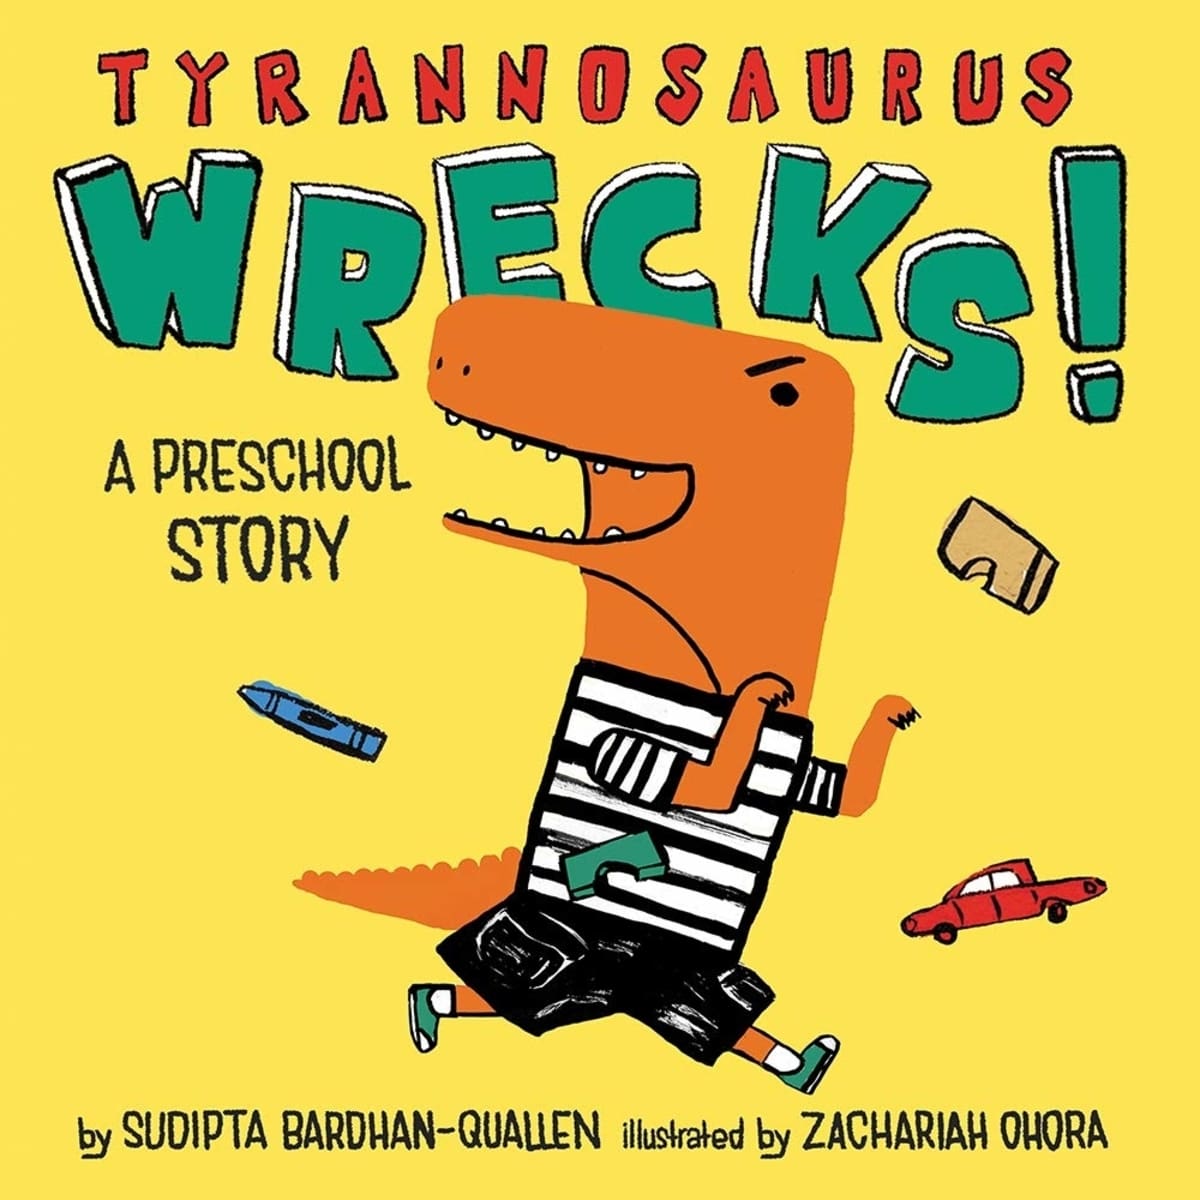 The book cover of "Tyrannasaurus Wrecks."